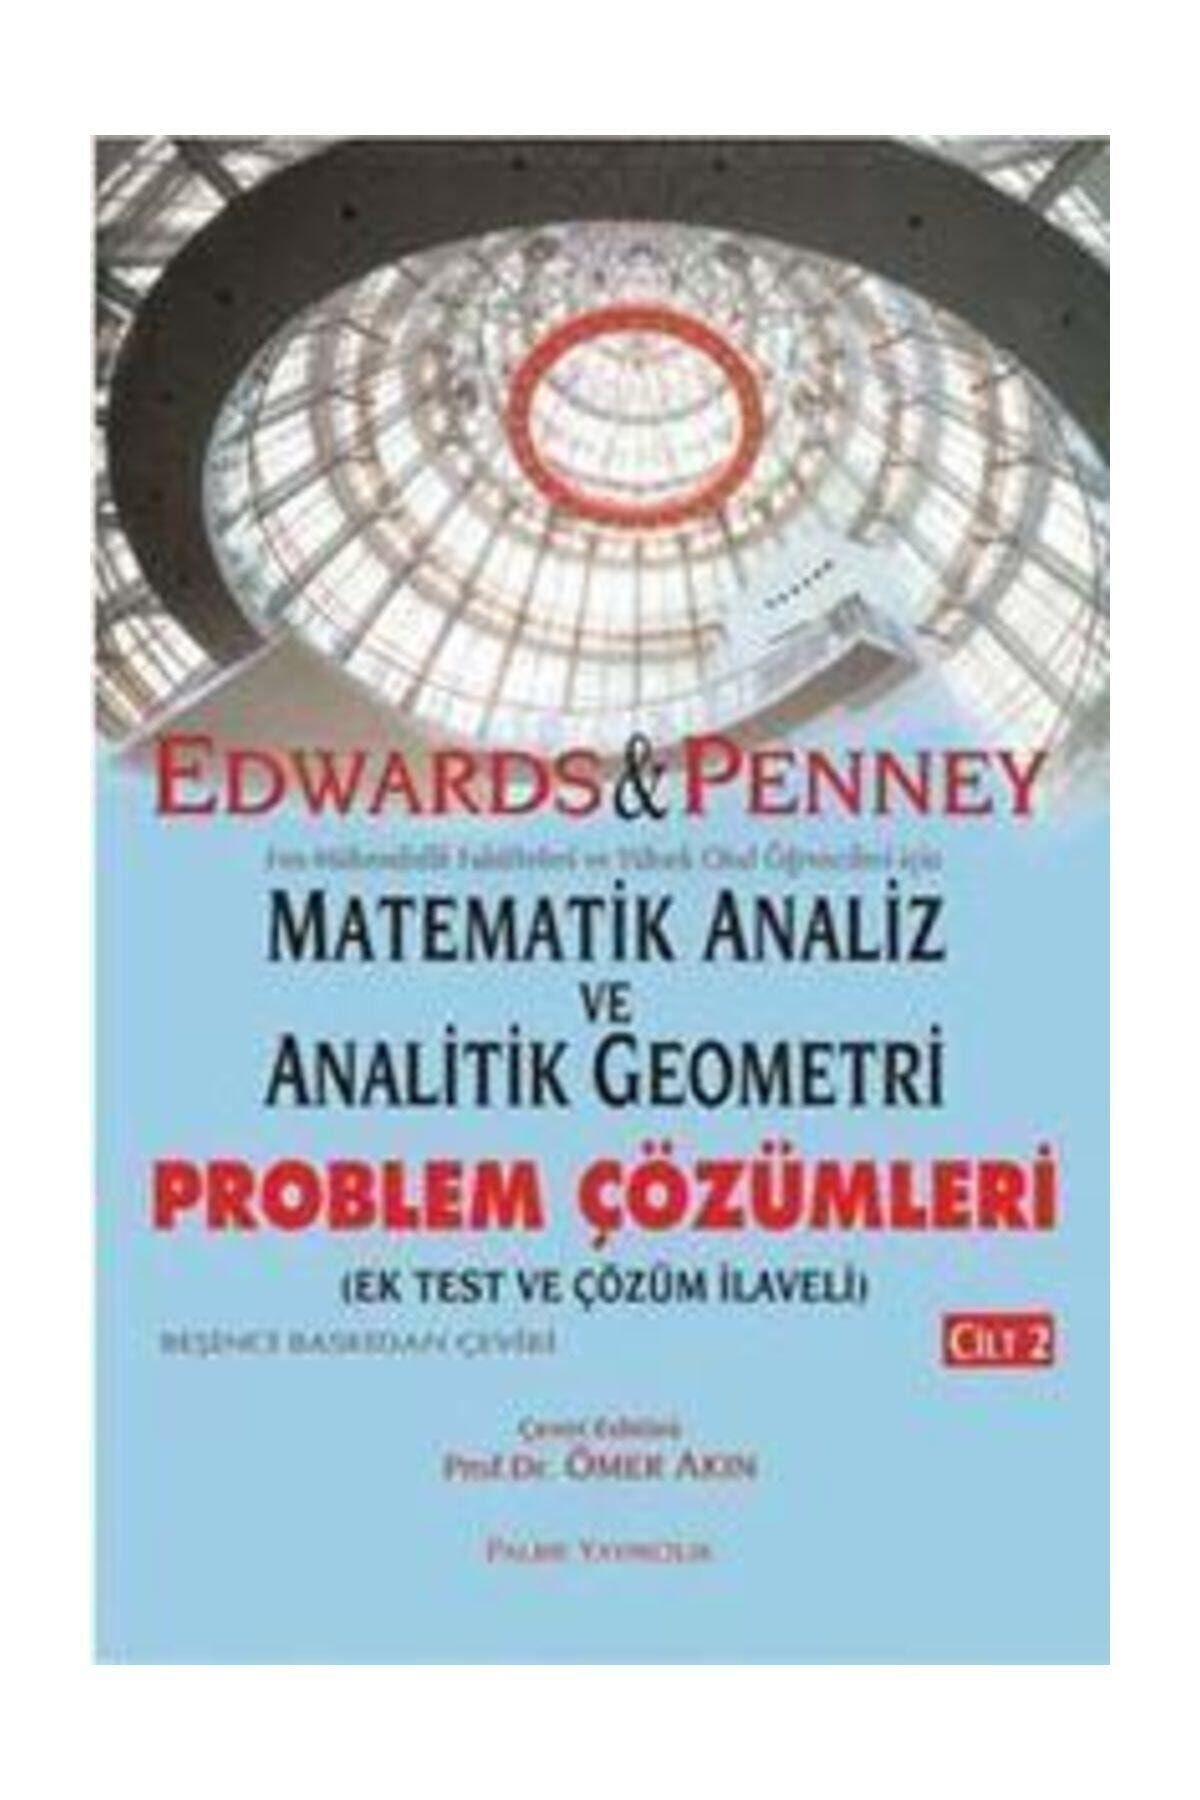 Palme Yayınevi Matematik Analiz Ve Analitik Geometri / Problem Çözümleri Kitabı (cilt 2)